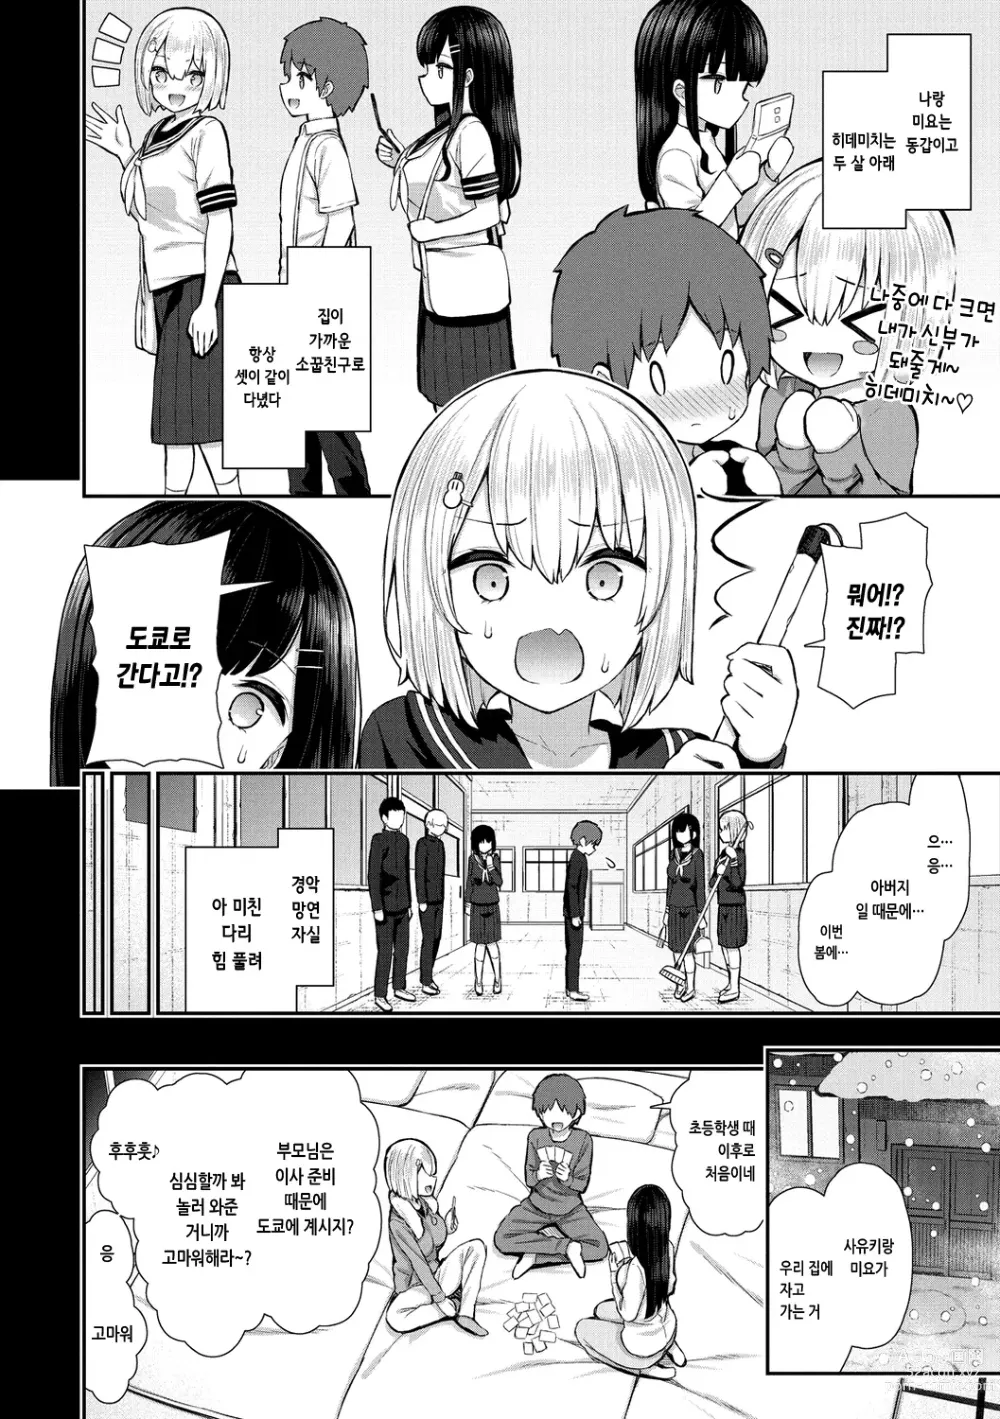 Page 8 of manga 체리 먹여줄래?